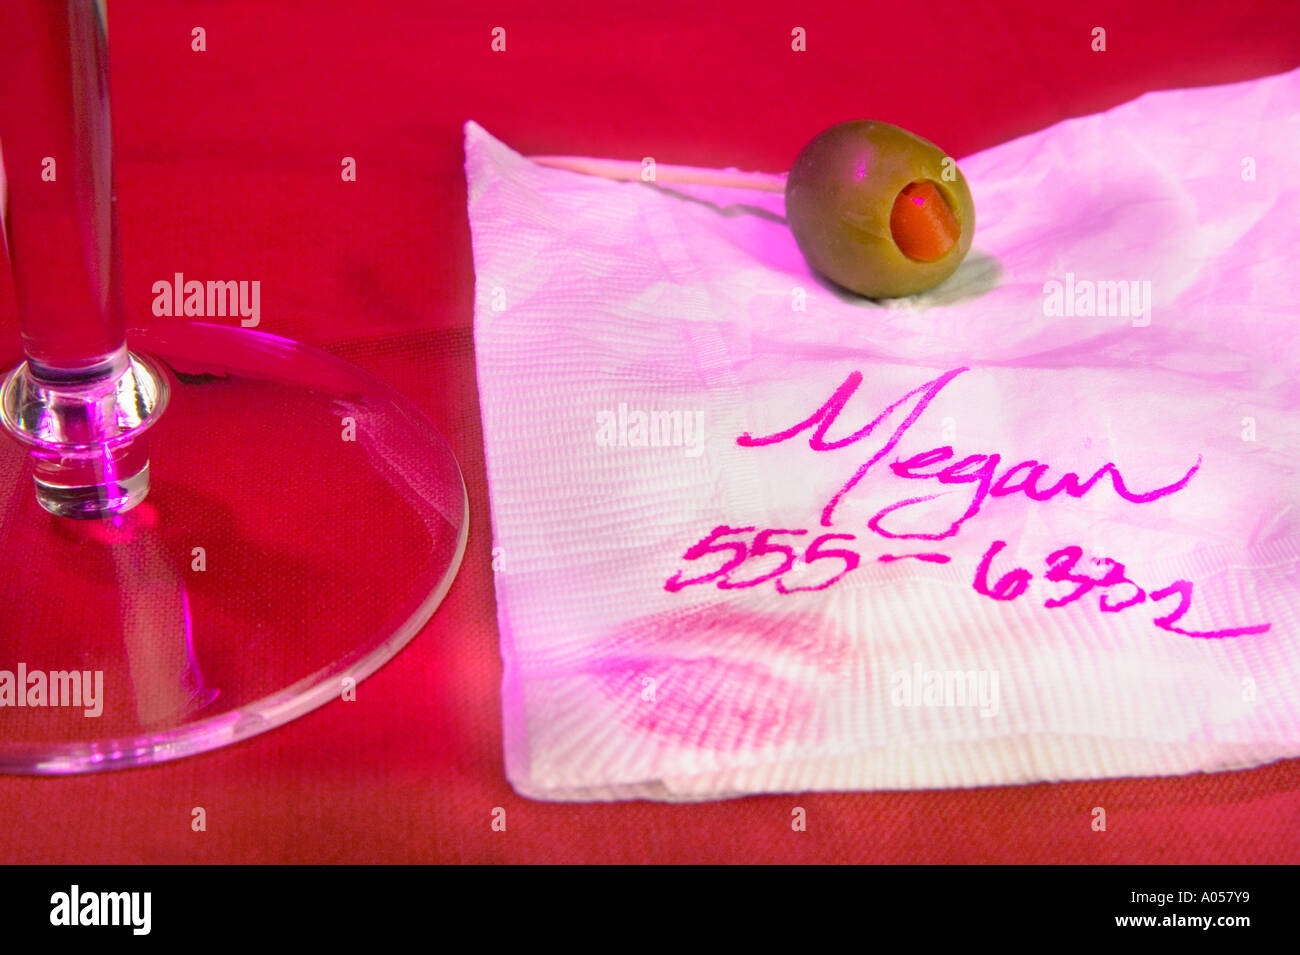 La ragazza di nome e numero scritto sul tovagliolo con olive, stuzzicadenti e coppetta Martini. Foto Stock